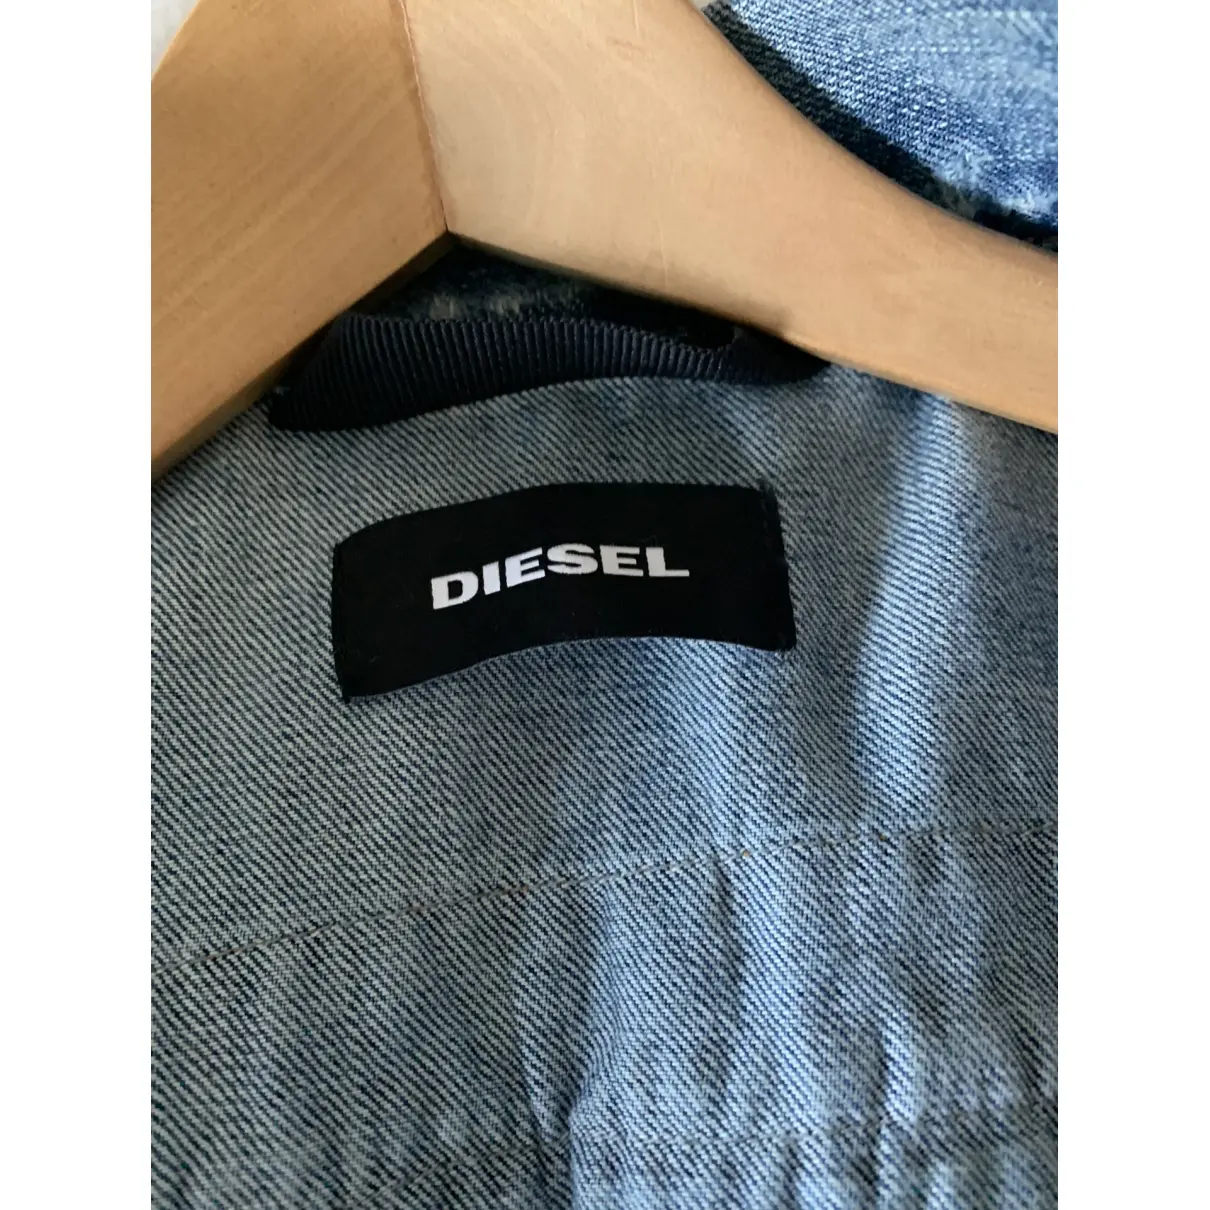 Jacket Diesel